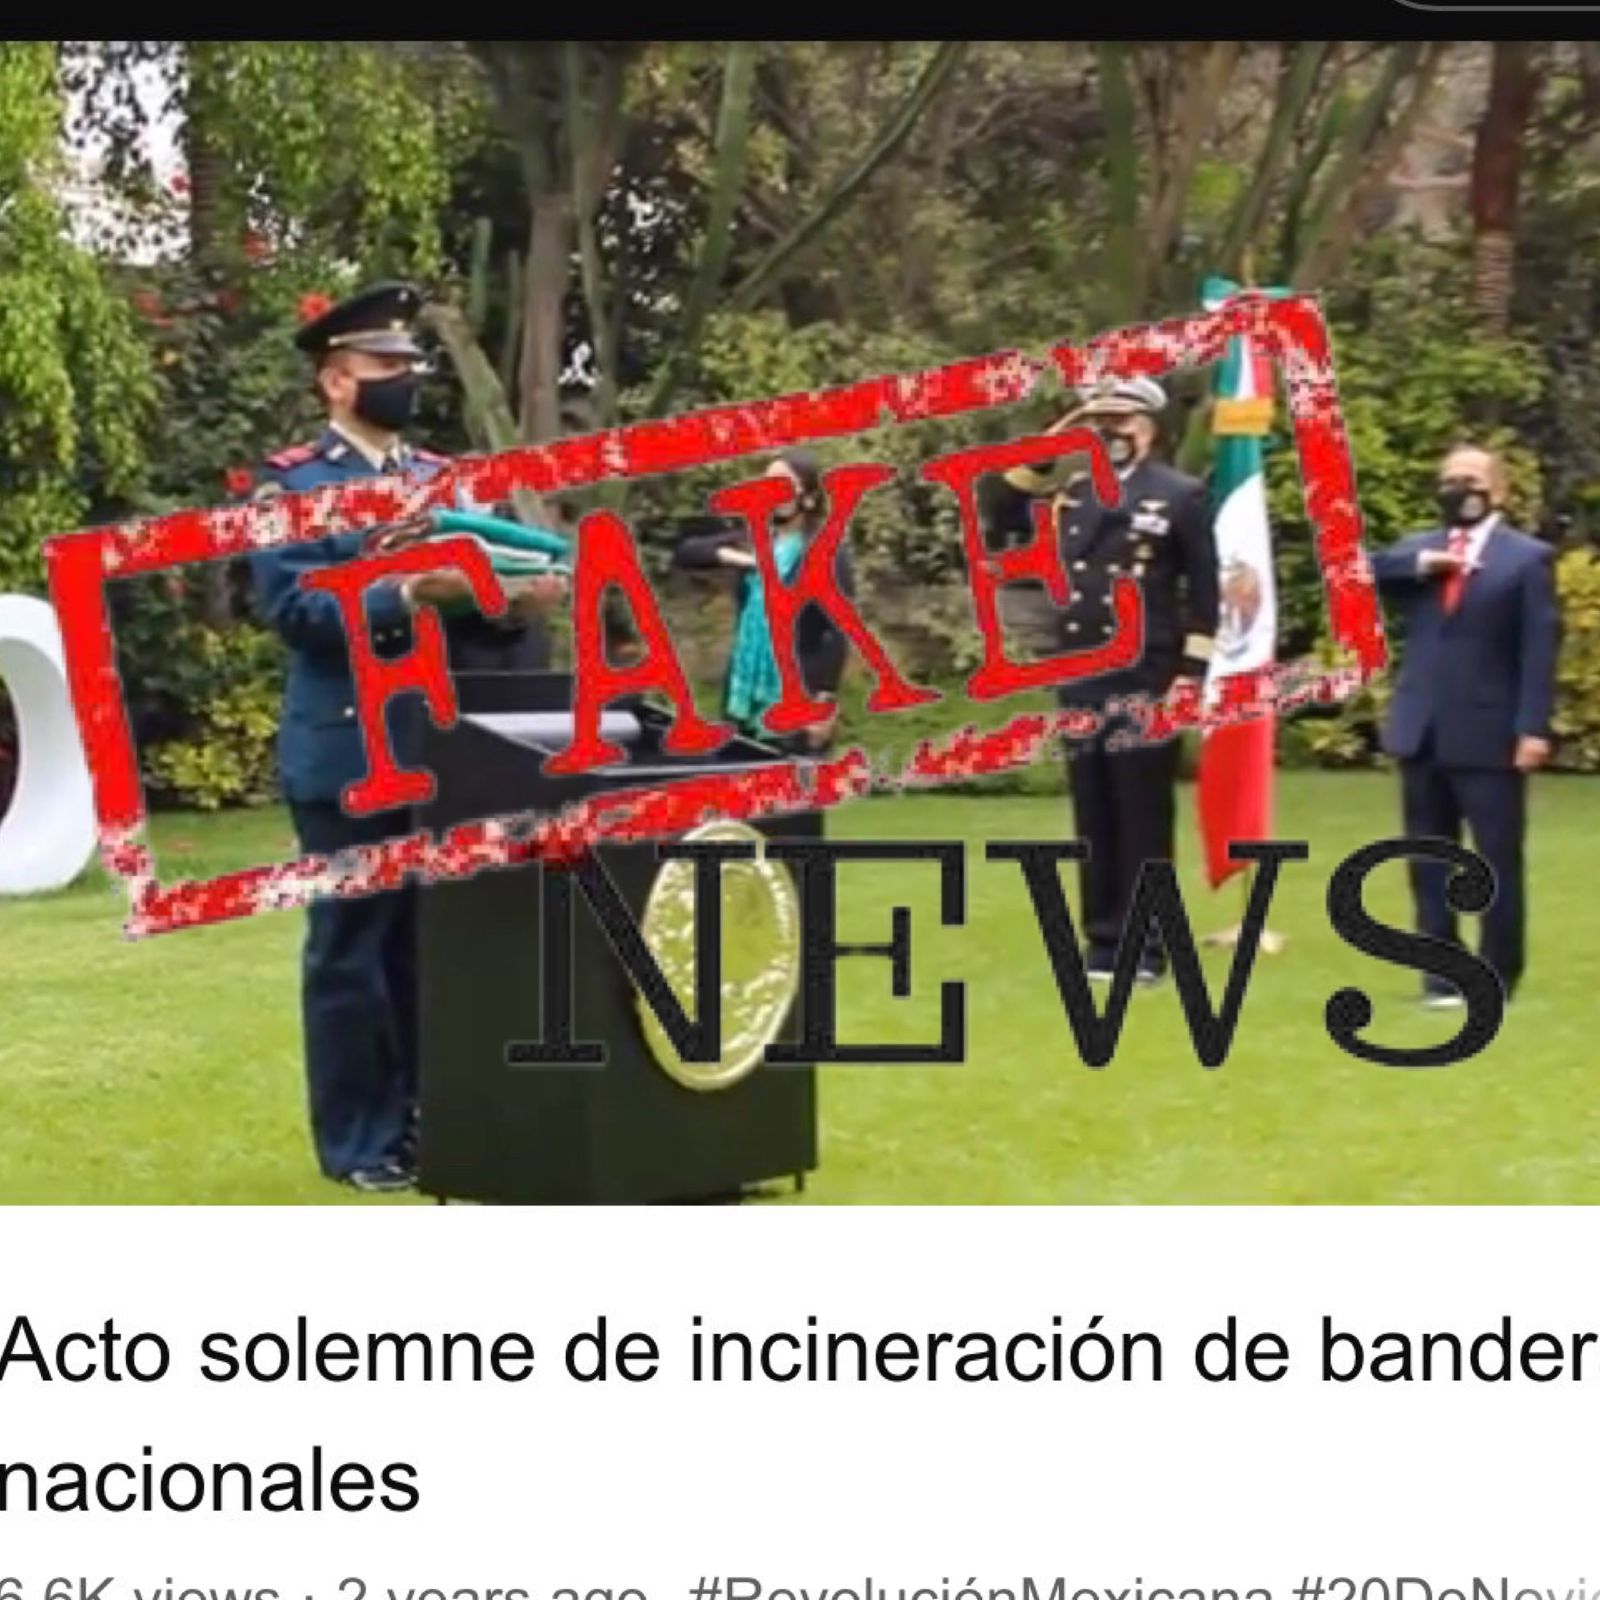 Fue una fake news la incineración de la bandera de México en Perú